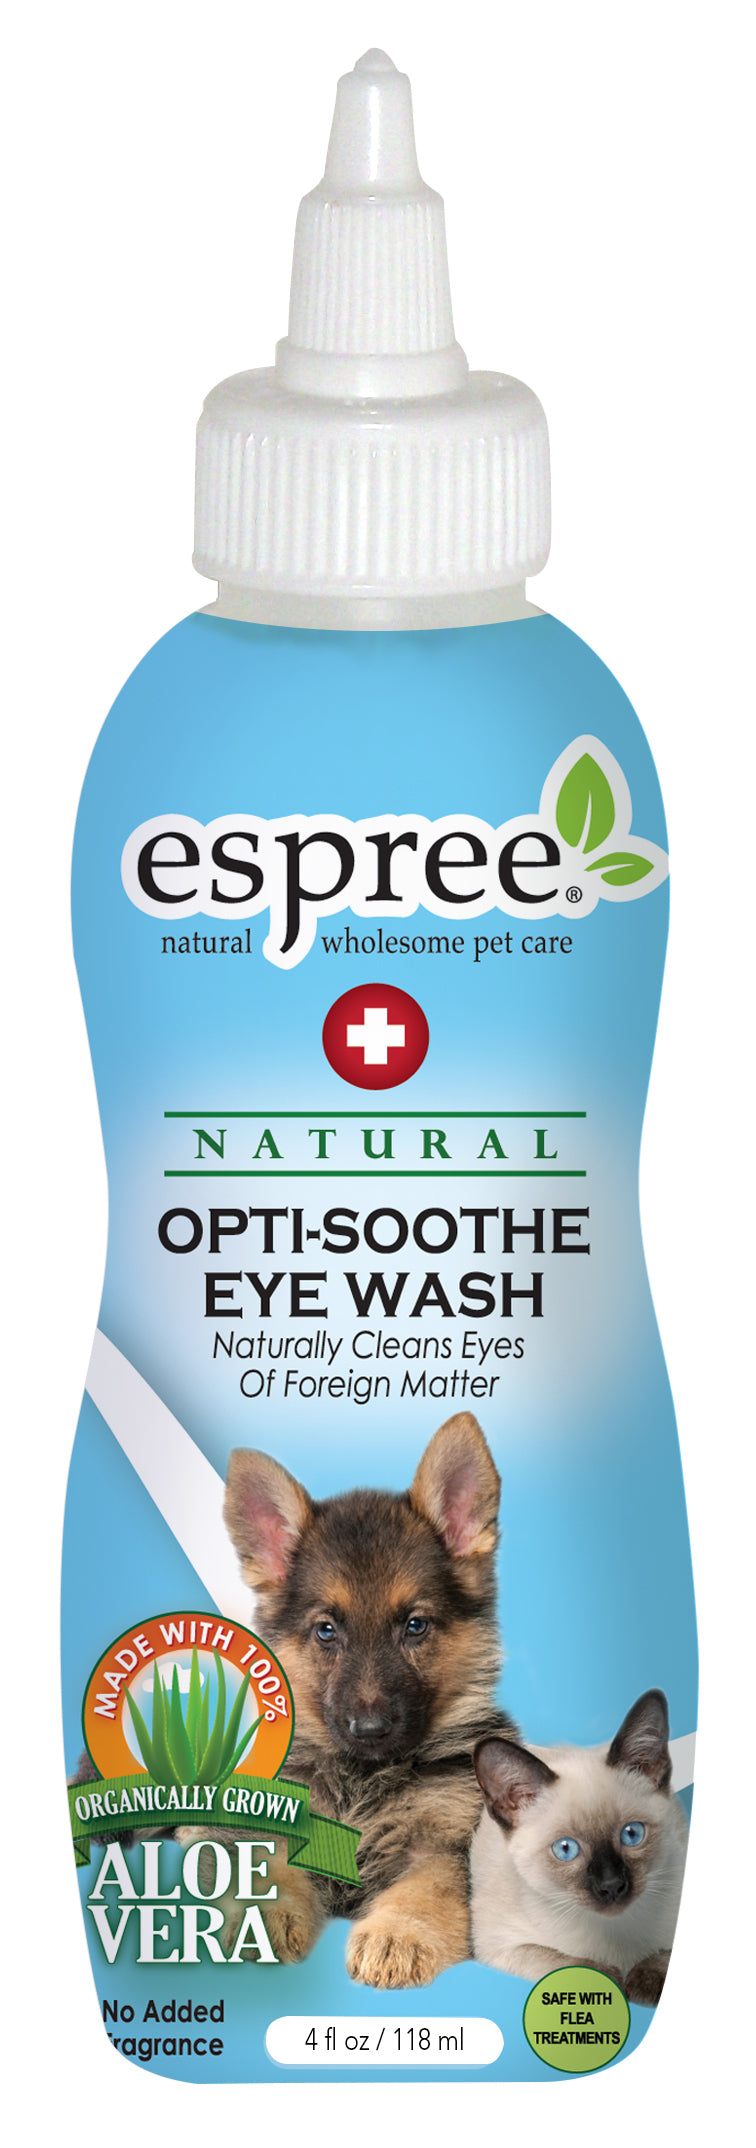 Espree Opti-Soothe Eye Wash Ögonrengöring